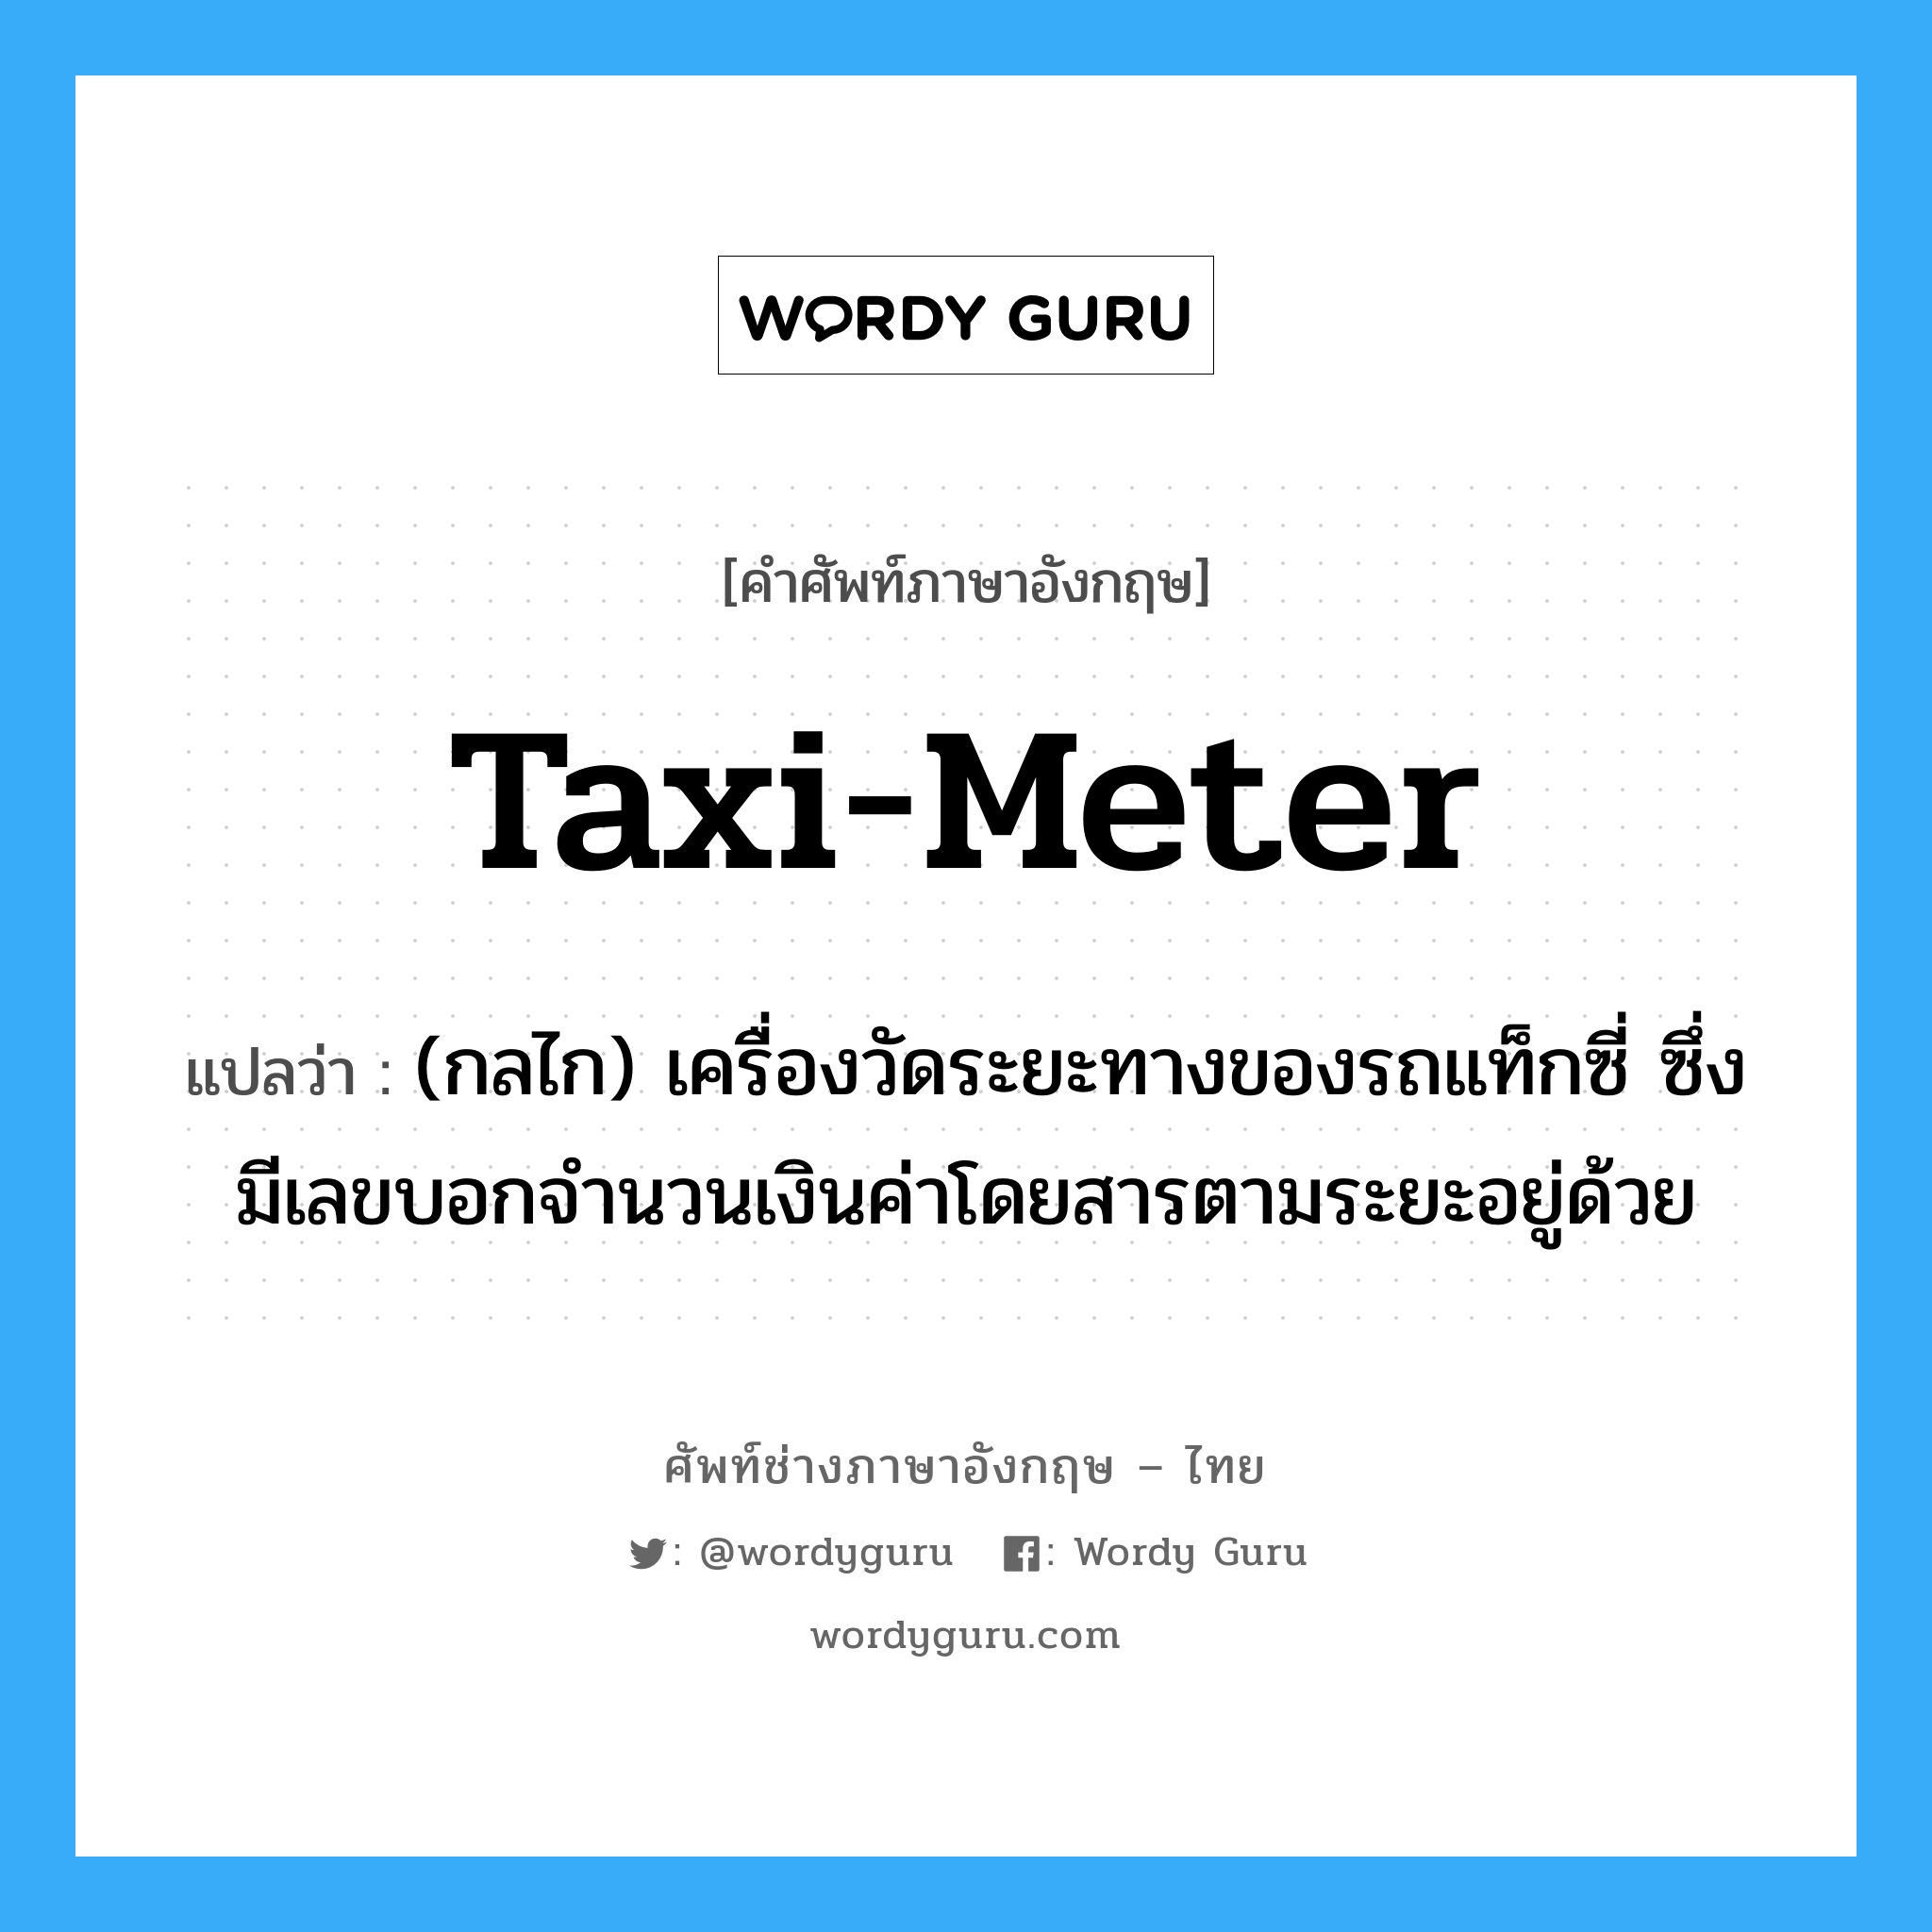 taxi-meter แปลว่า?, คำศัพท์ช่างภาษาอังกฤษ - ไทย taxi-meter คำศัพท์ภาษาอังกฤษ taxi-meter แปลว่า (กลไก) เครื่องวัดระยะทางของรถแท็กซี่ ซึ่งมีเลขบอกจำนวนเงินค่าโดยสารตามระยะอยู่ด้วย